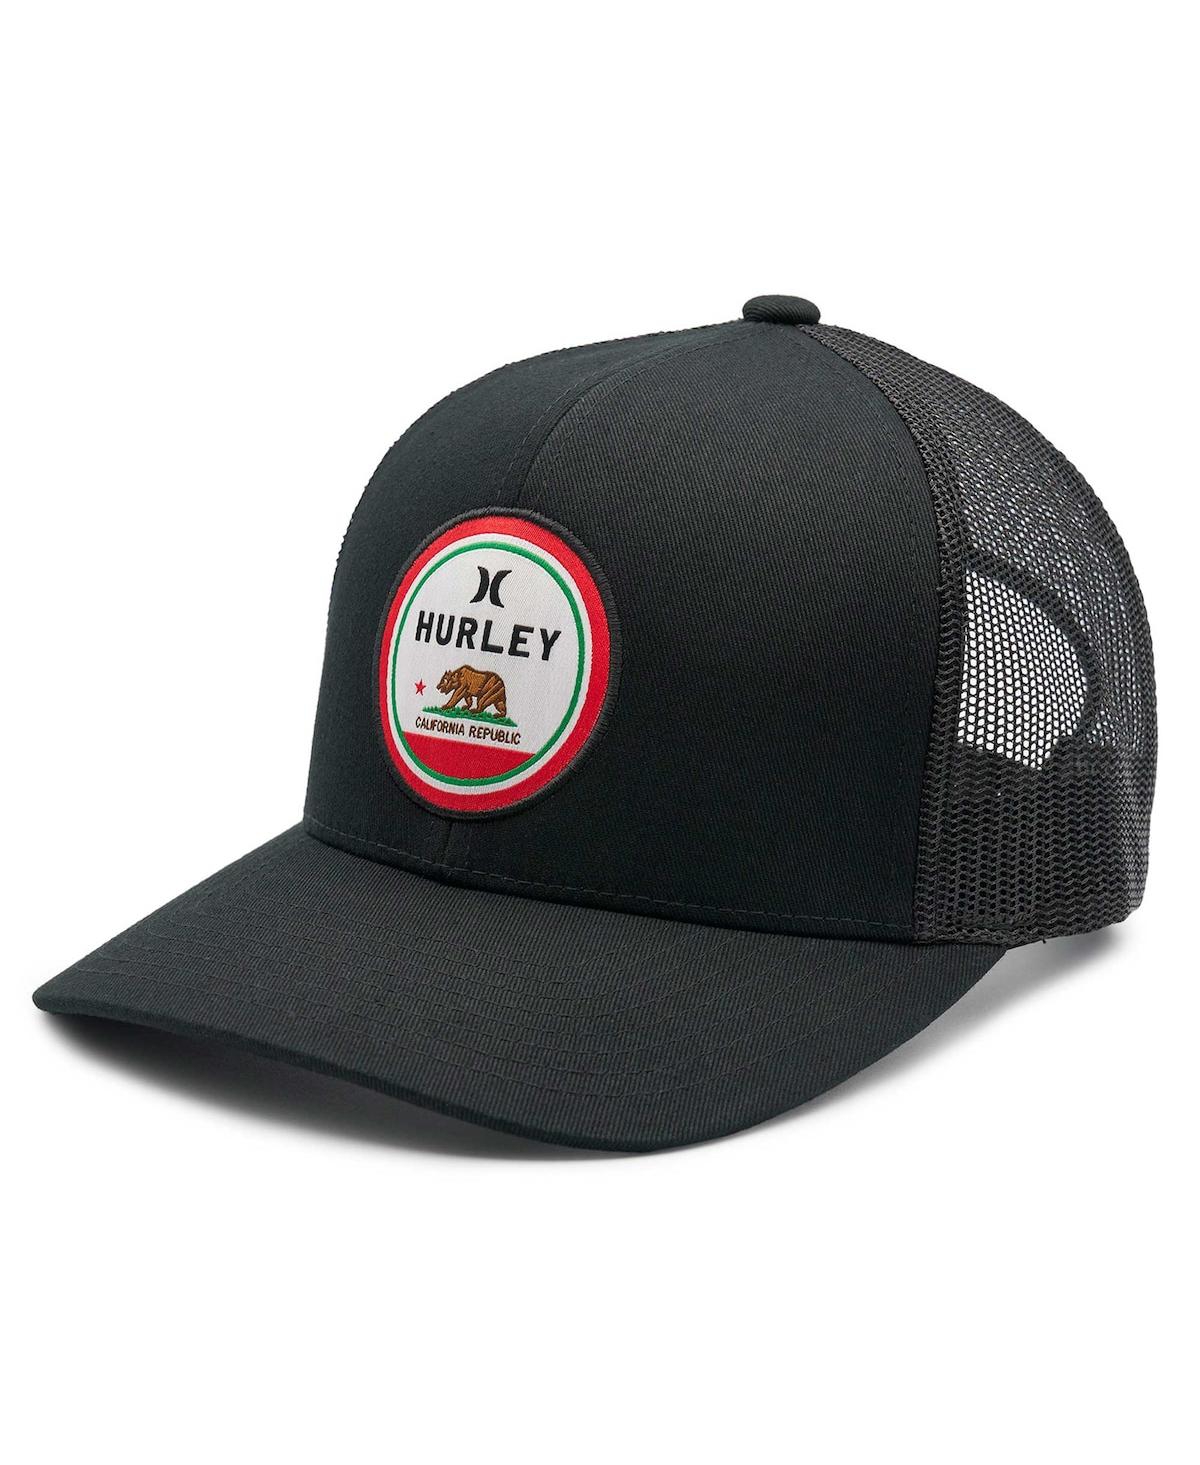 Men's Black Local Trucker Adjustable Hat - Black